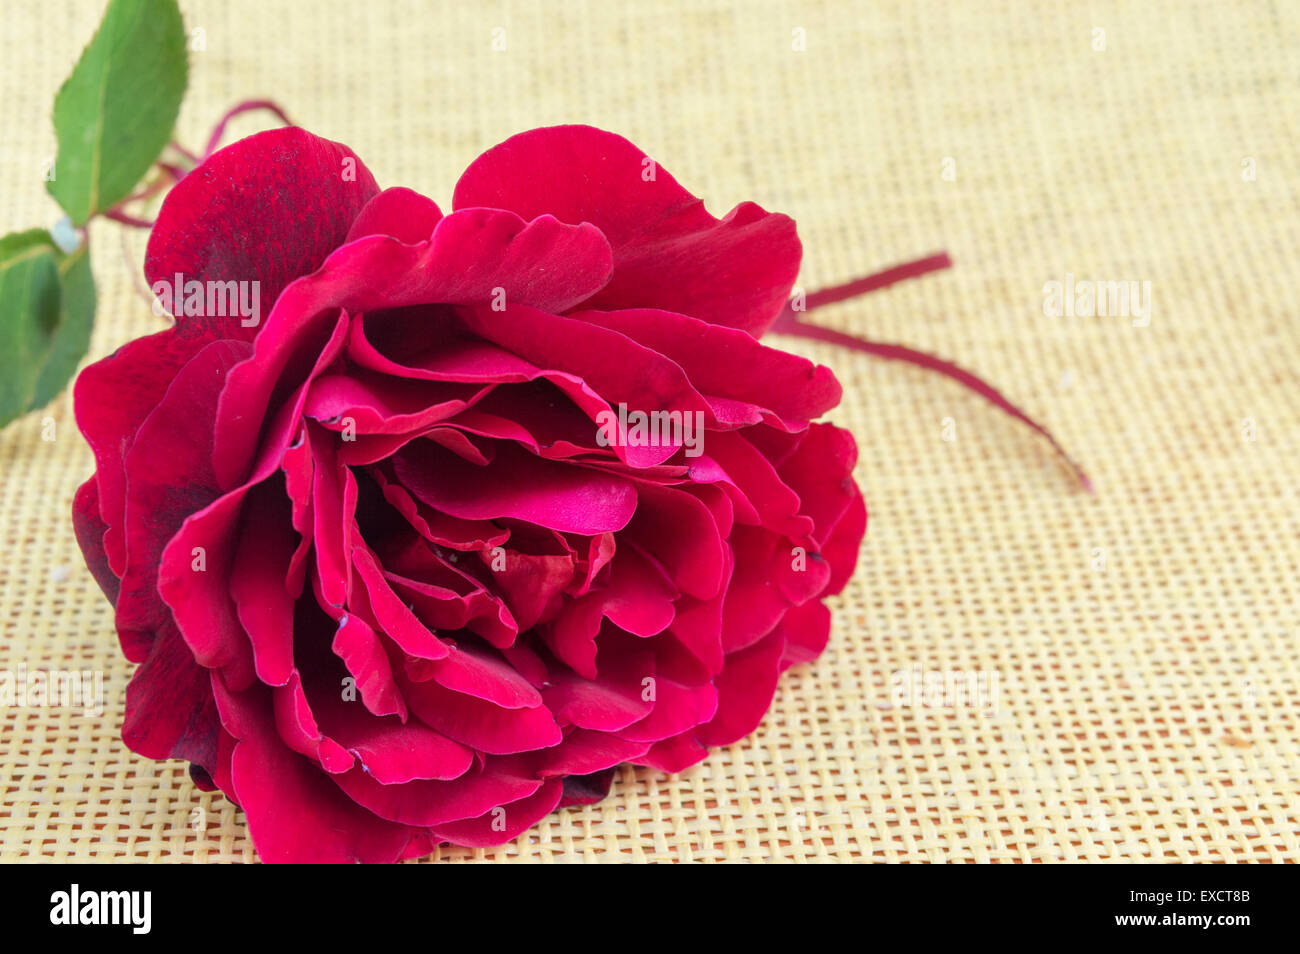 Natürliche rote Rose auf einem gelben Hintergrund Stockfoto